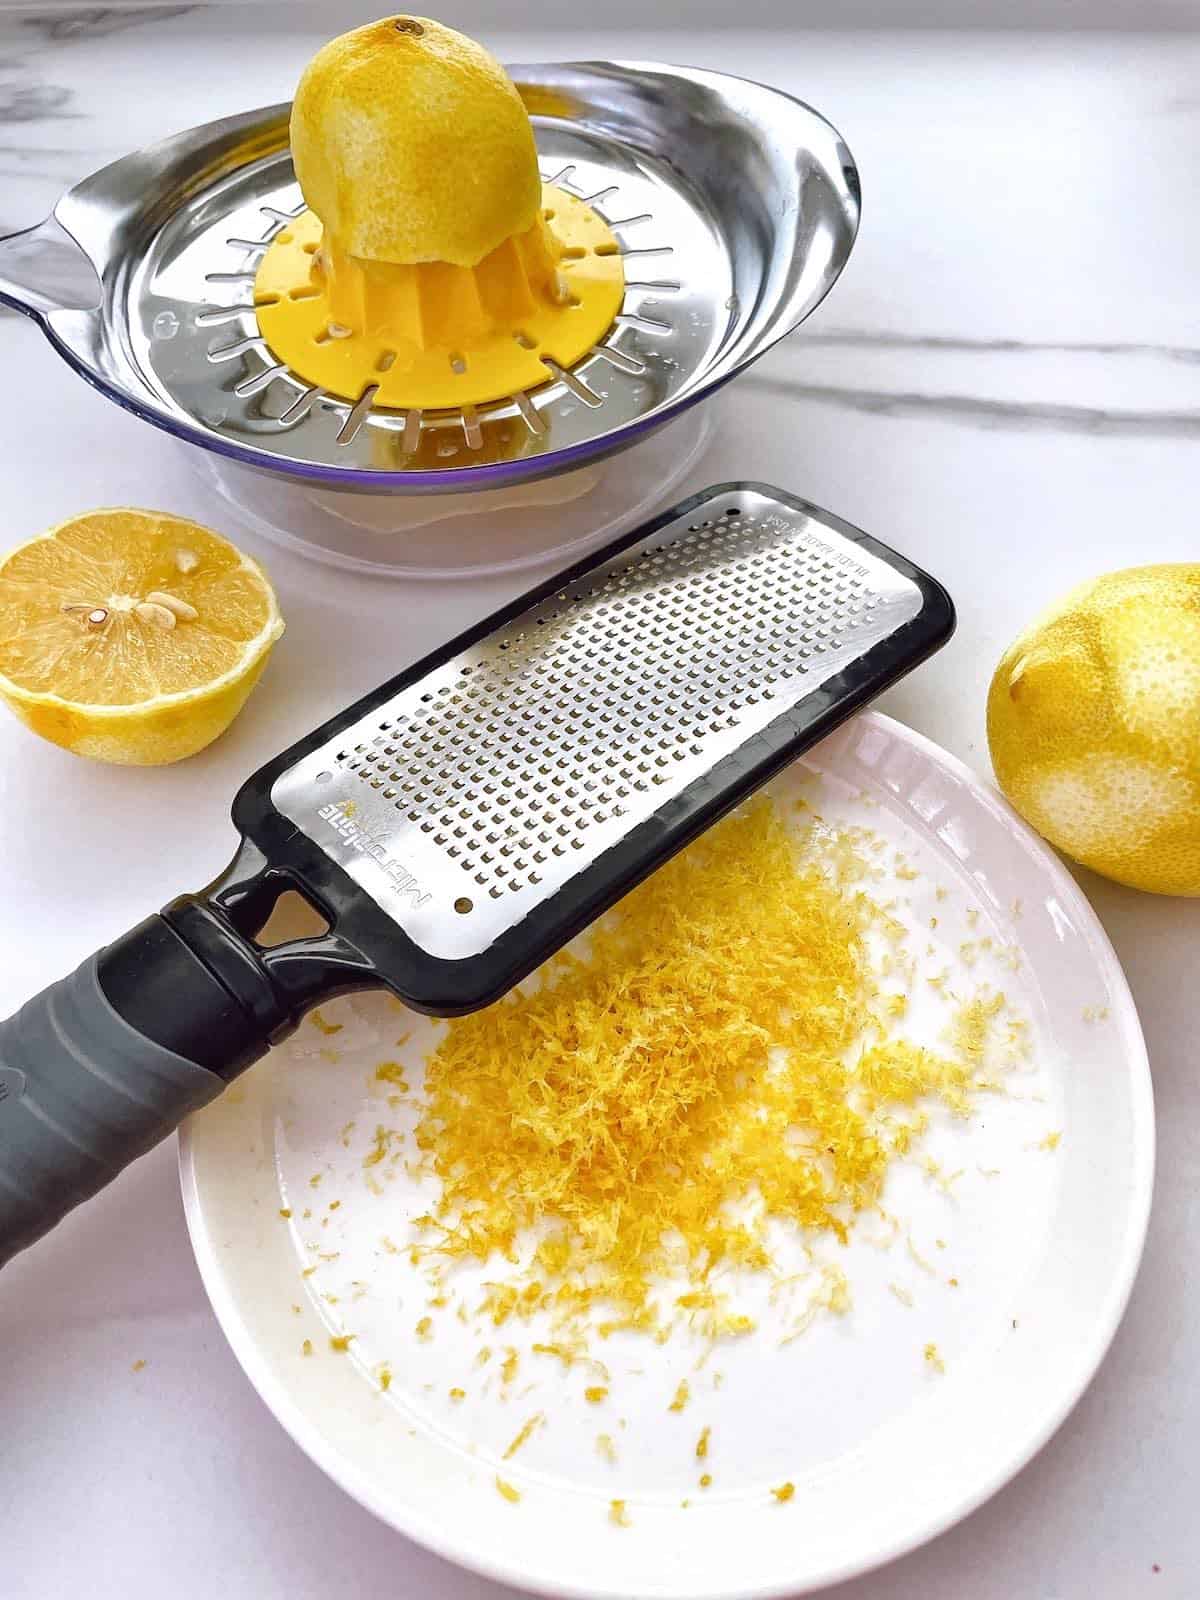 Lemon zester and juicer.